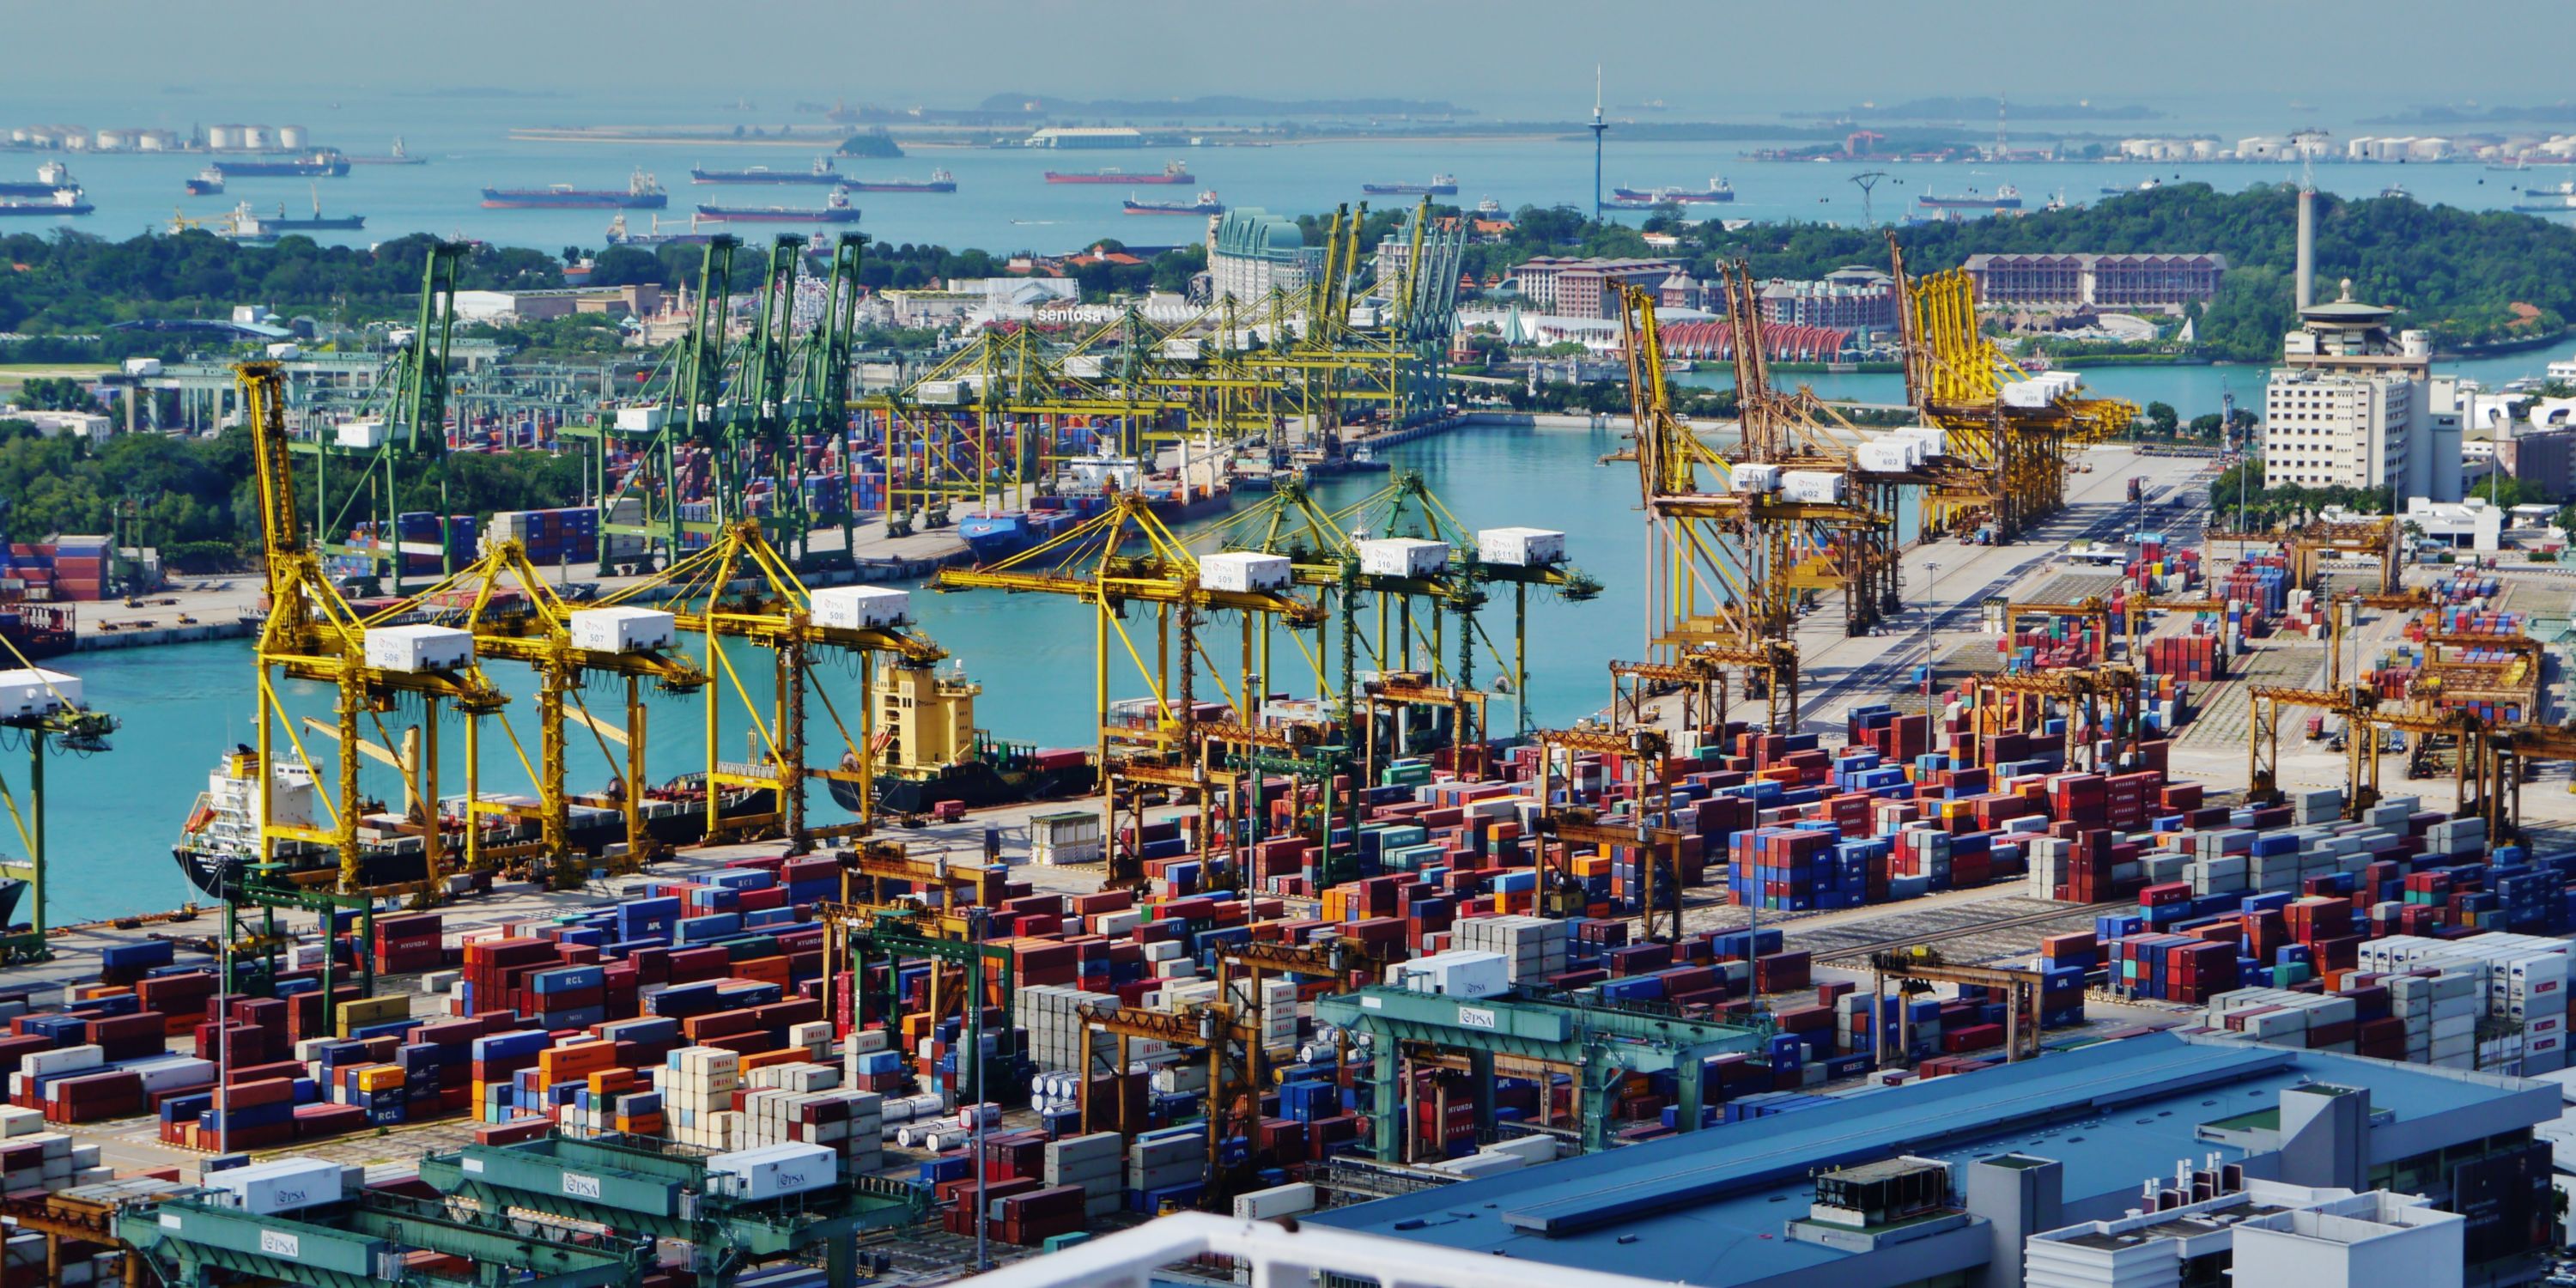 Singapour, l'un des plus grands ports du monde, va interdire les bateaux à moteur thermique